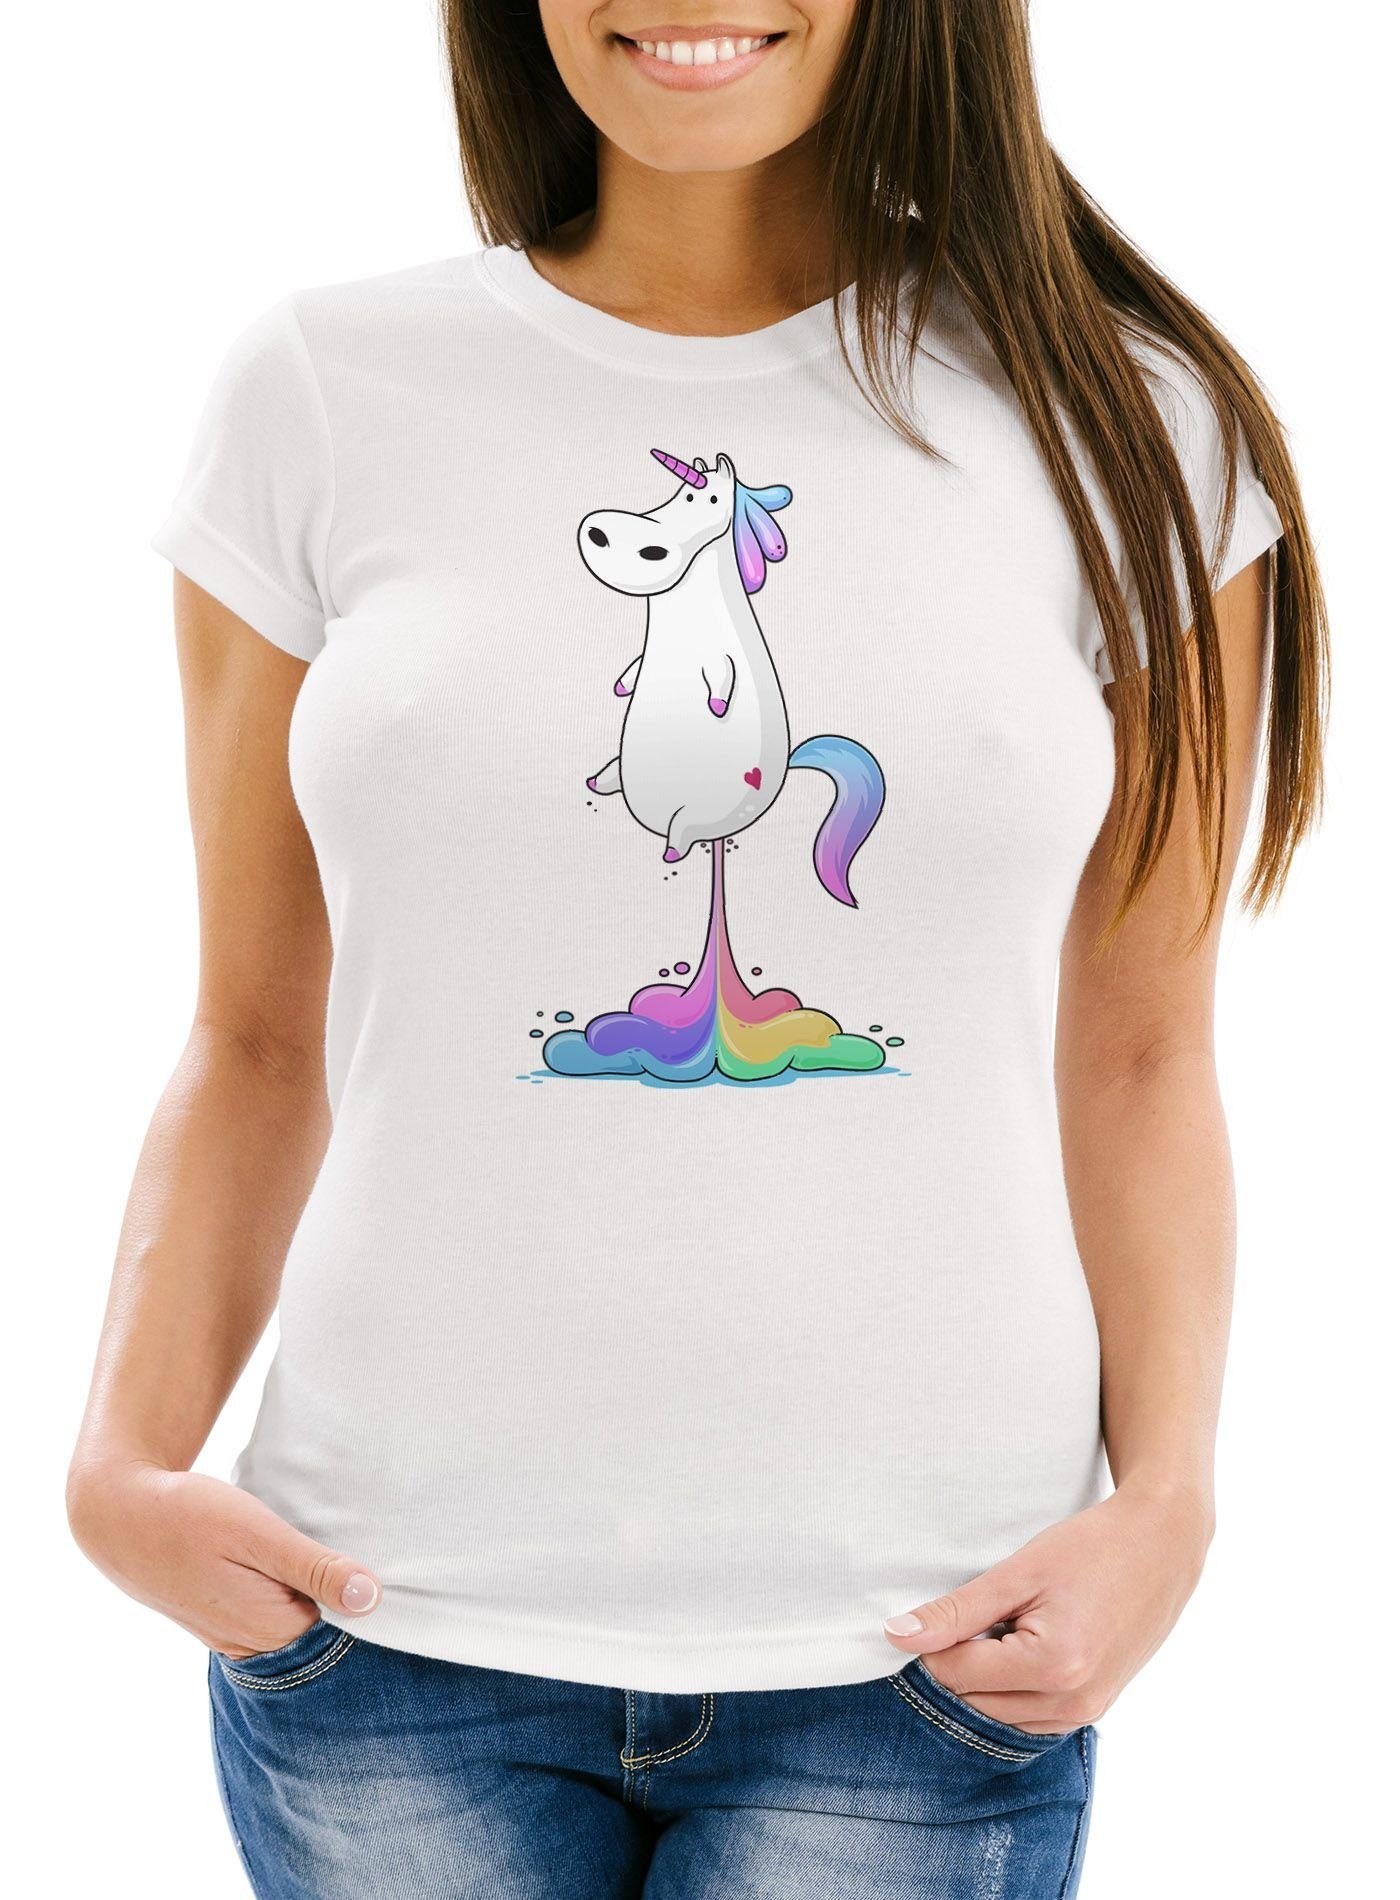 T-Shirt Moonworks® Fit Damen weiß Print-Shirt MoonWorks Slim Pups Print mit Einhorn